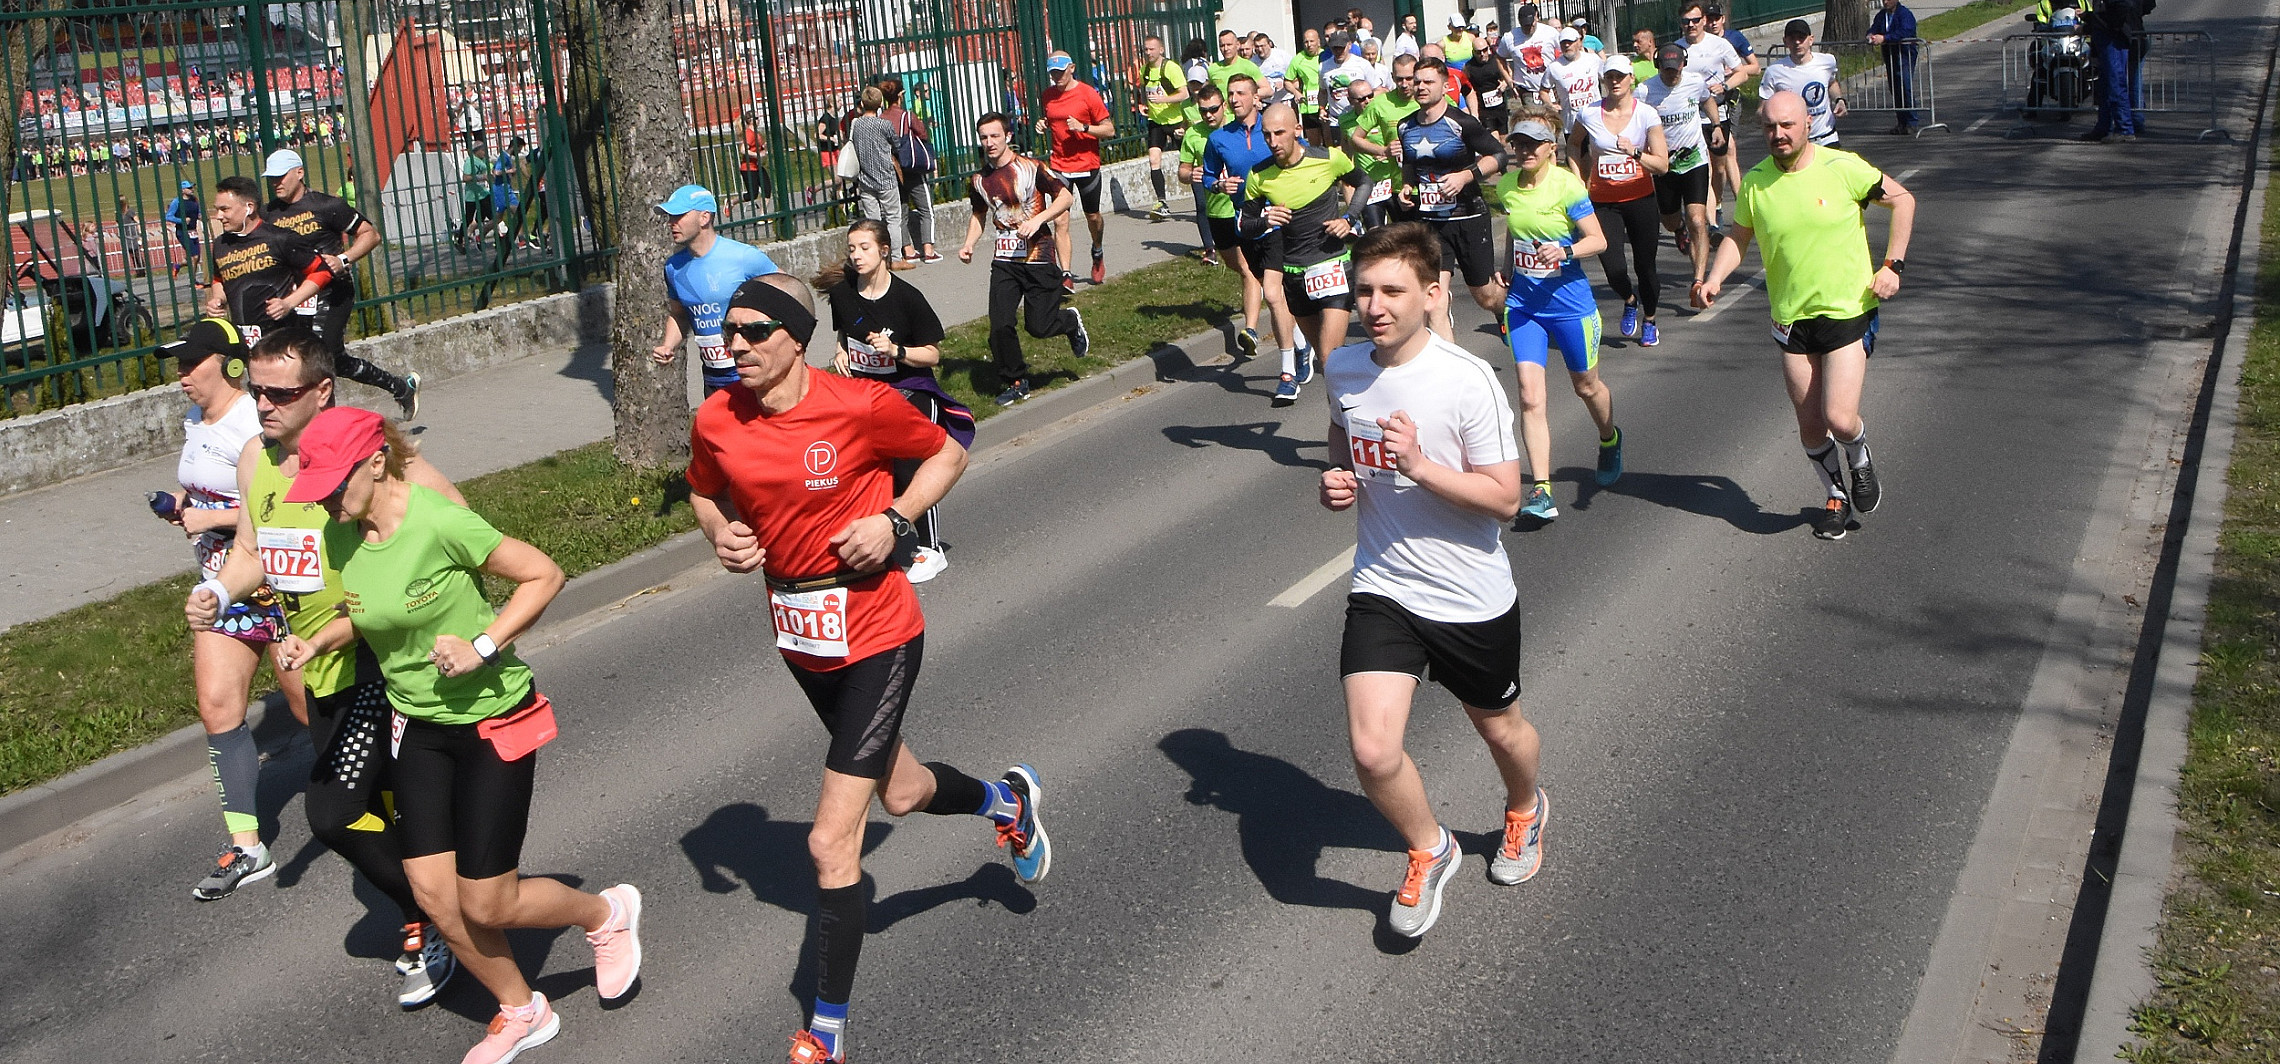 Inowrocław - Blisko 700 biegaczy zgromadził Green RUN